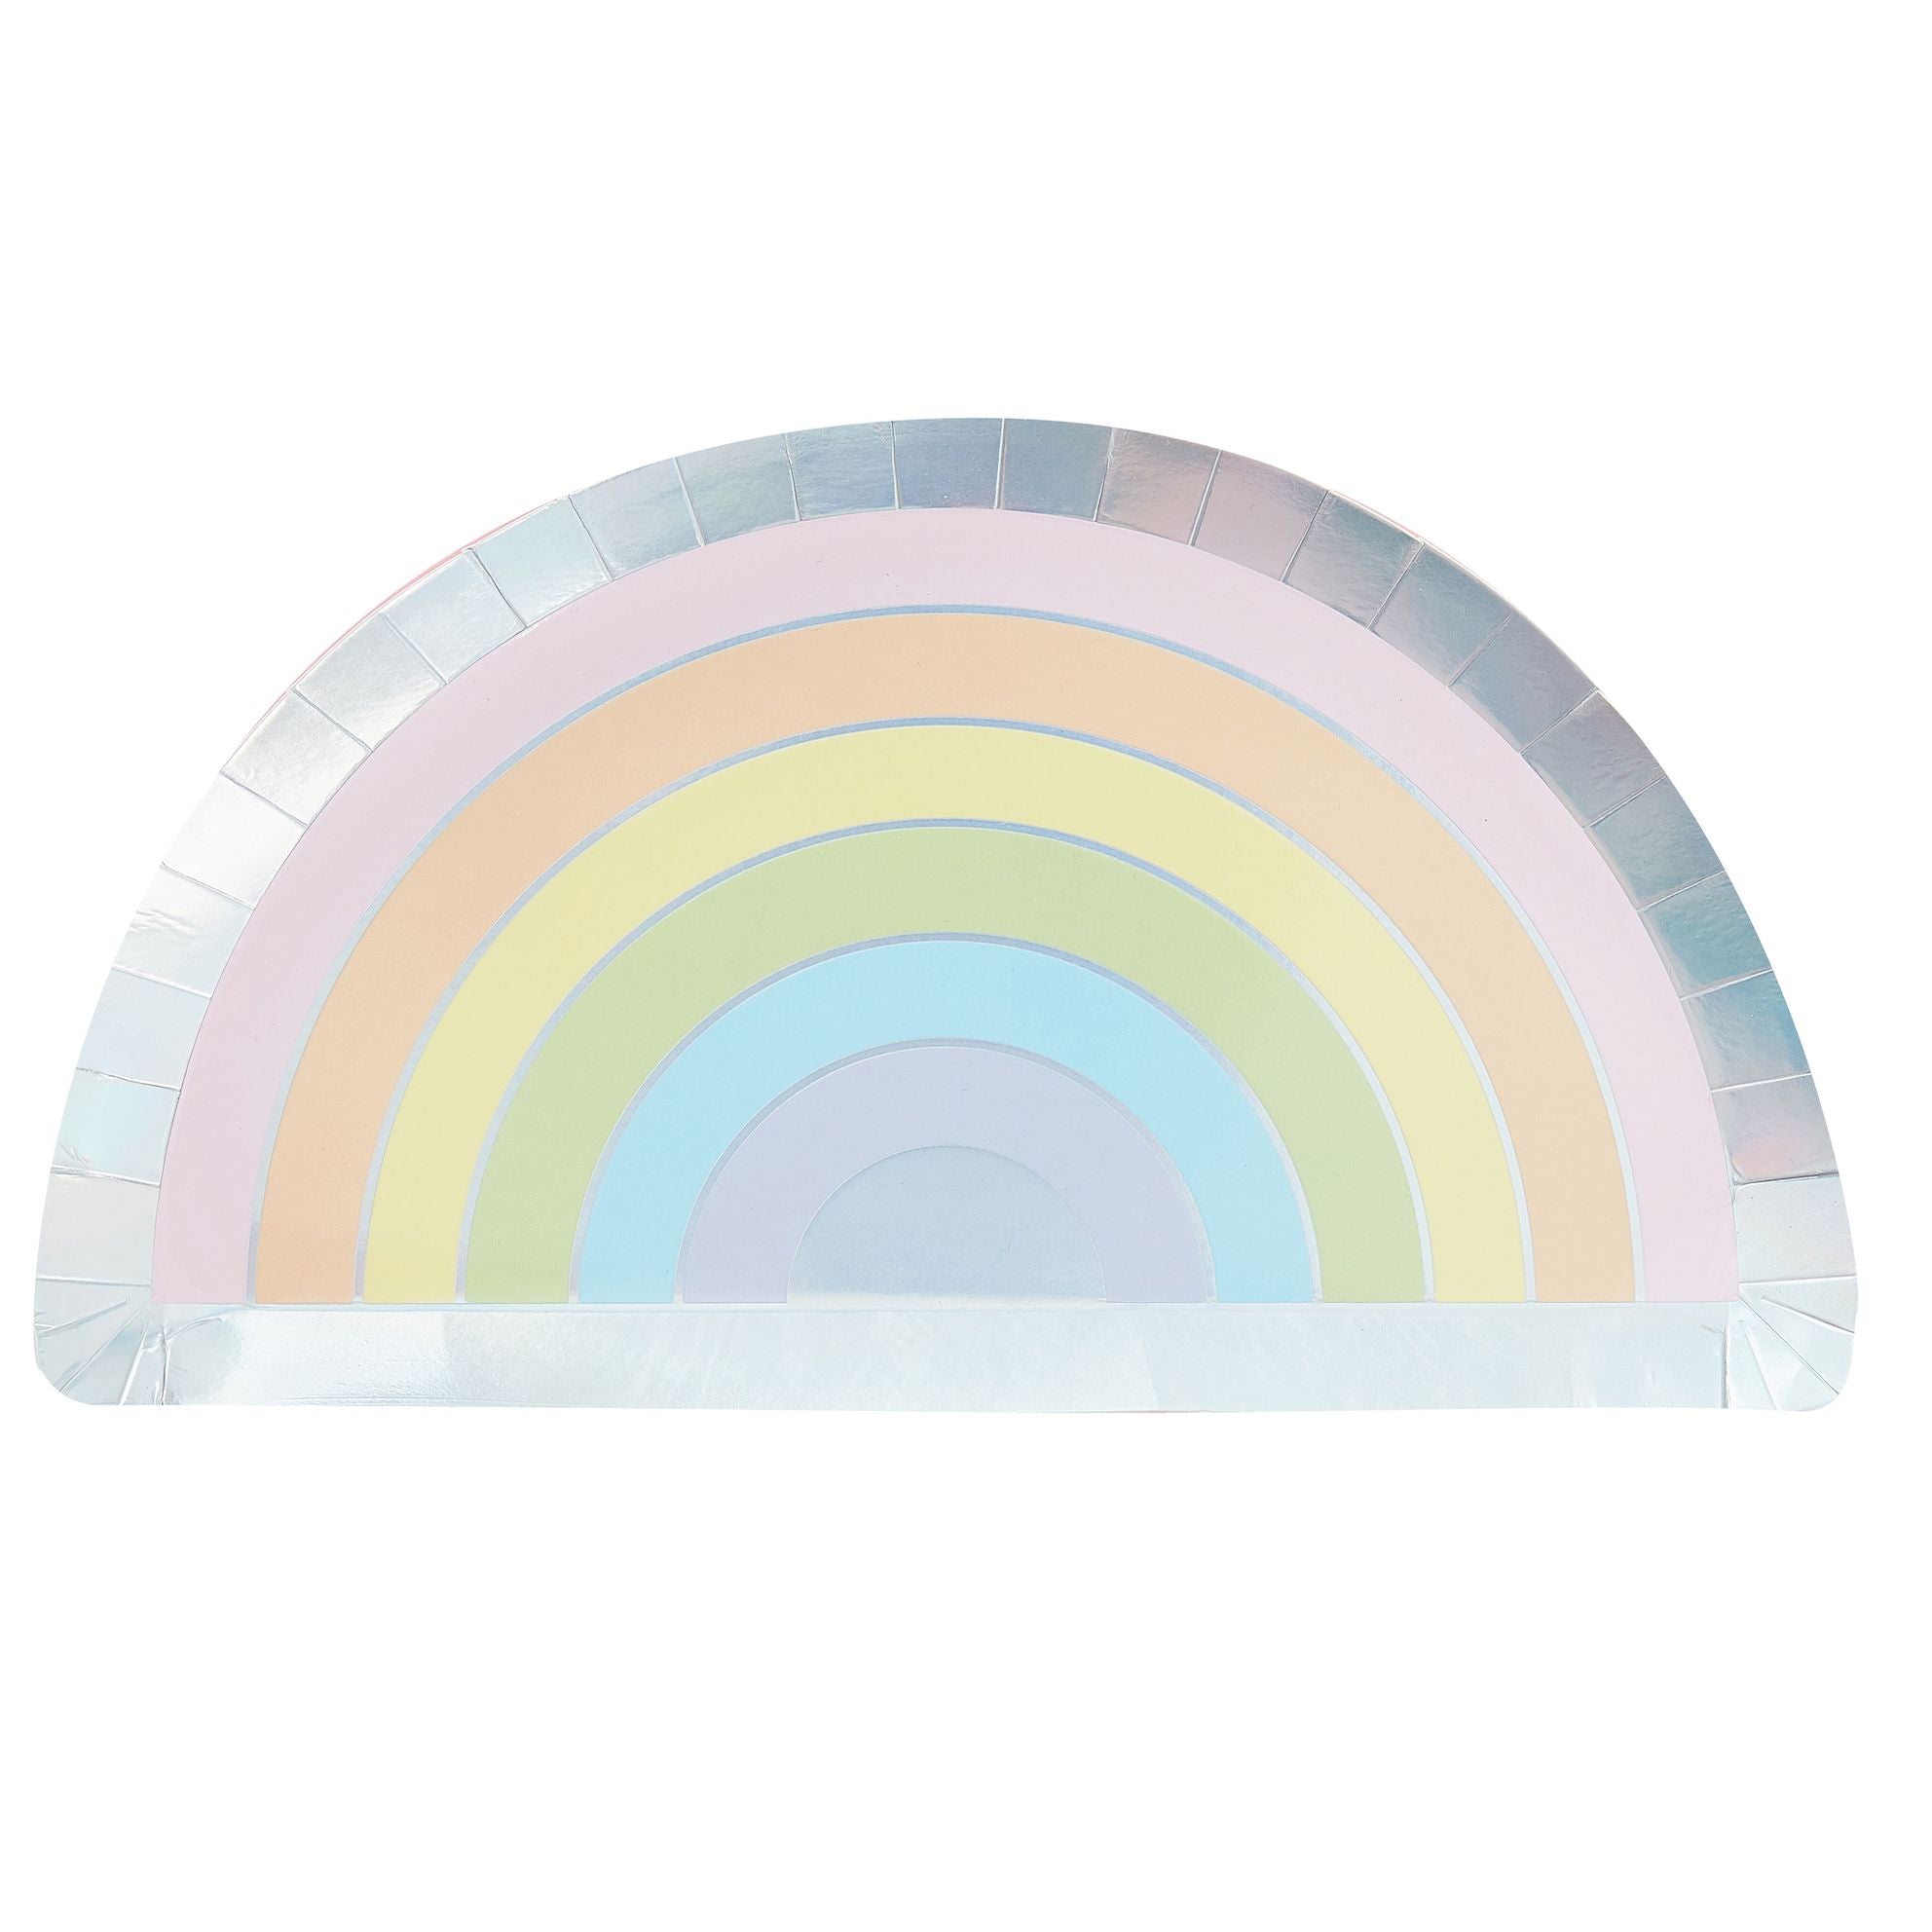 Teller Regenbogenform, pastel mit Silberrand, 8 Stk.